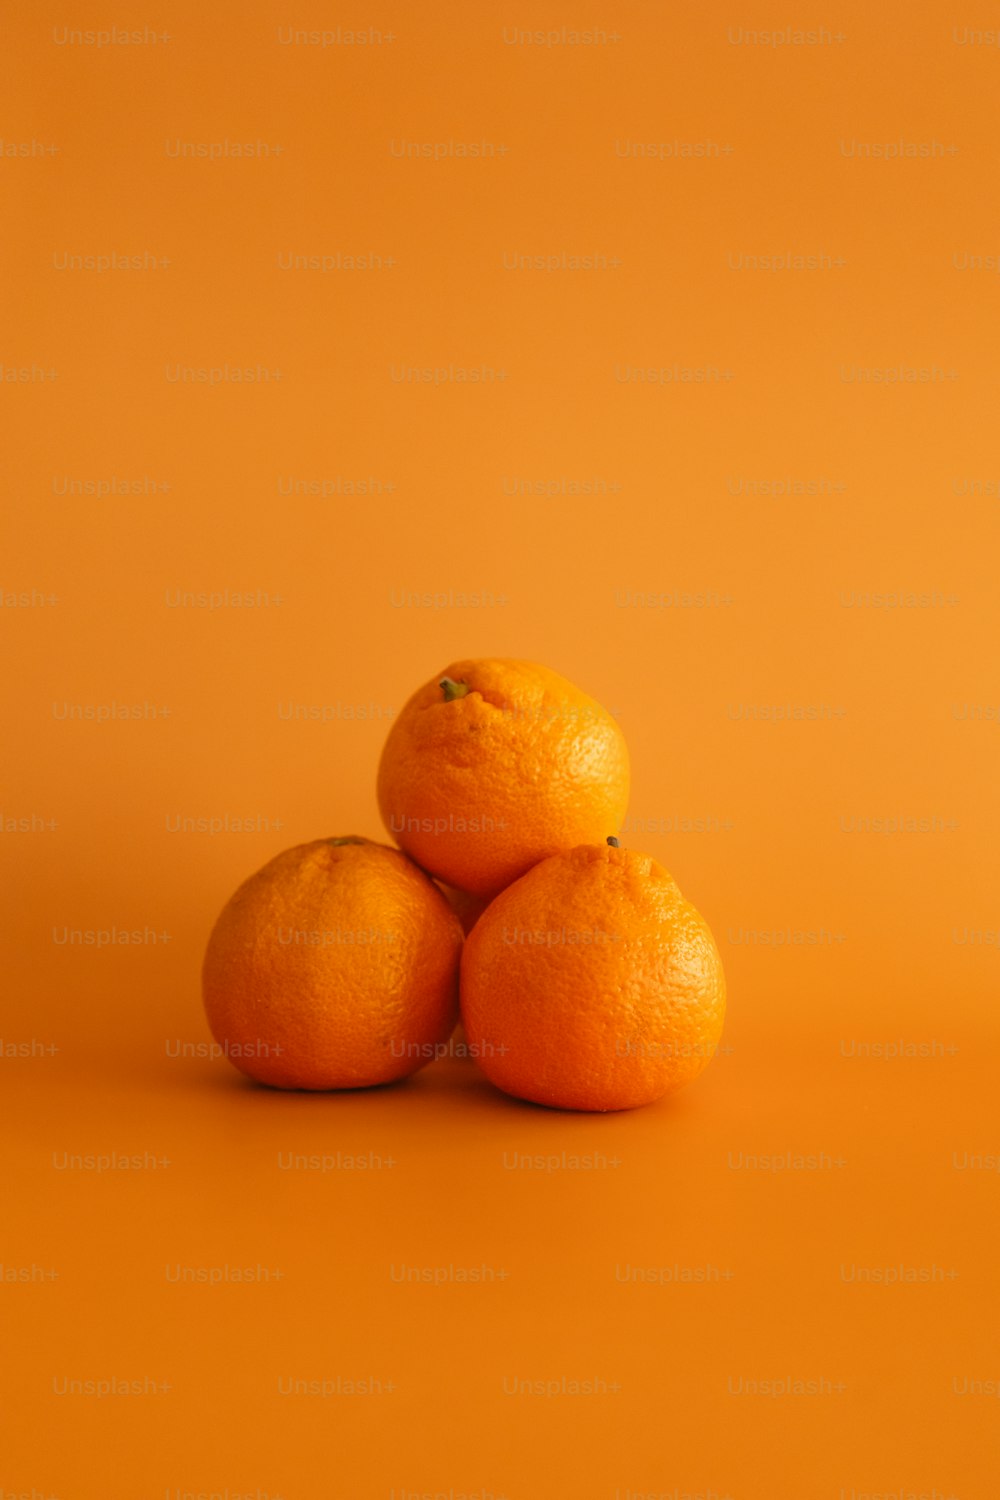 trois oranges superposées l’une sur l’autre